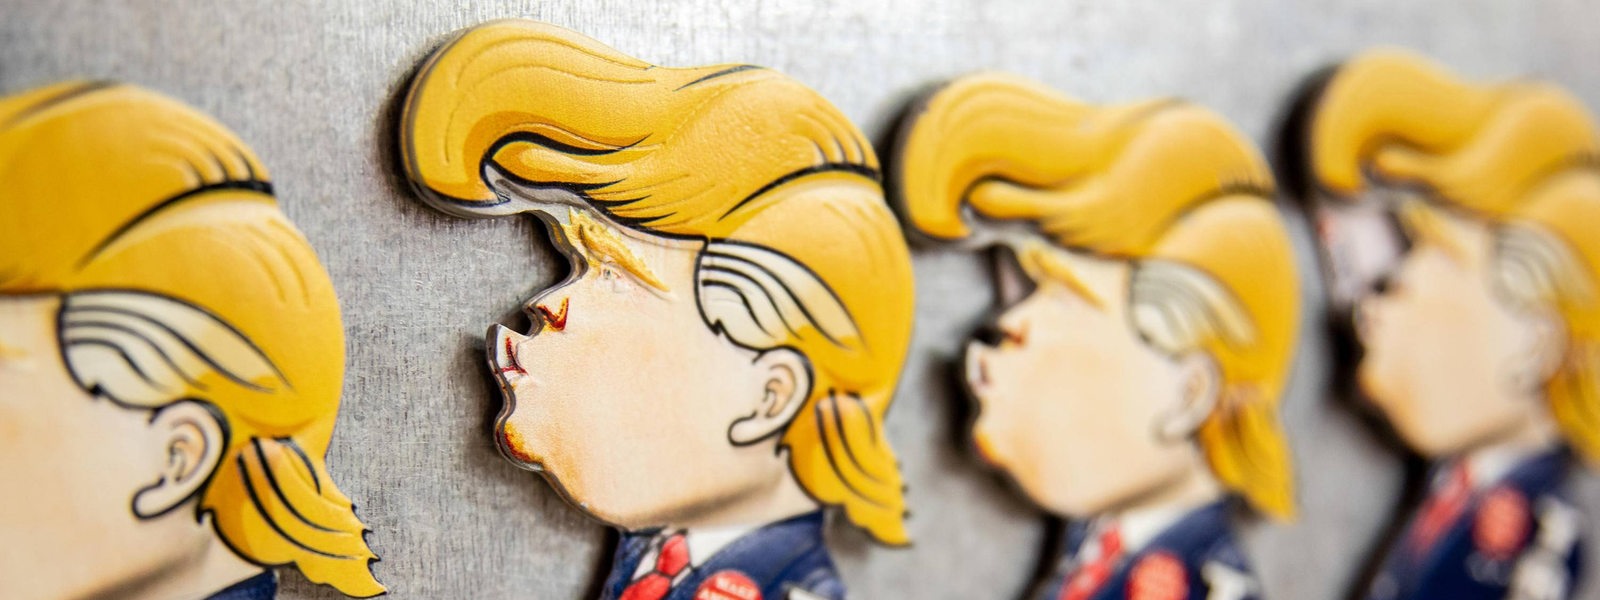 Pins von Donald Trump.